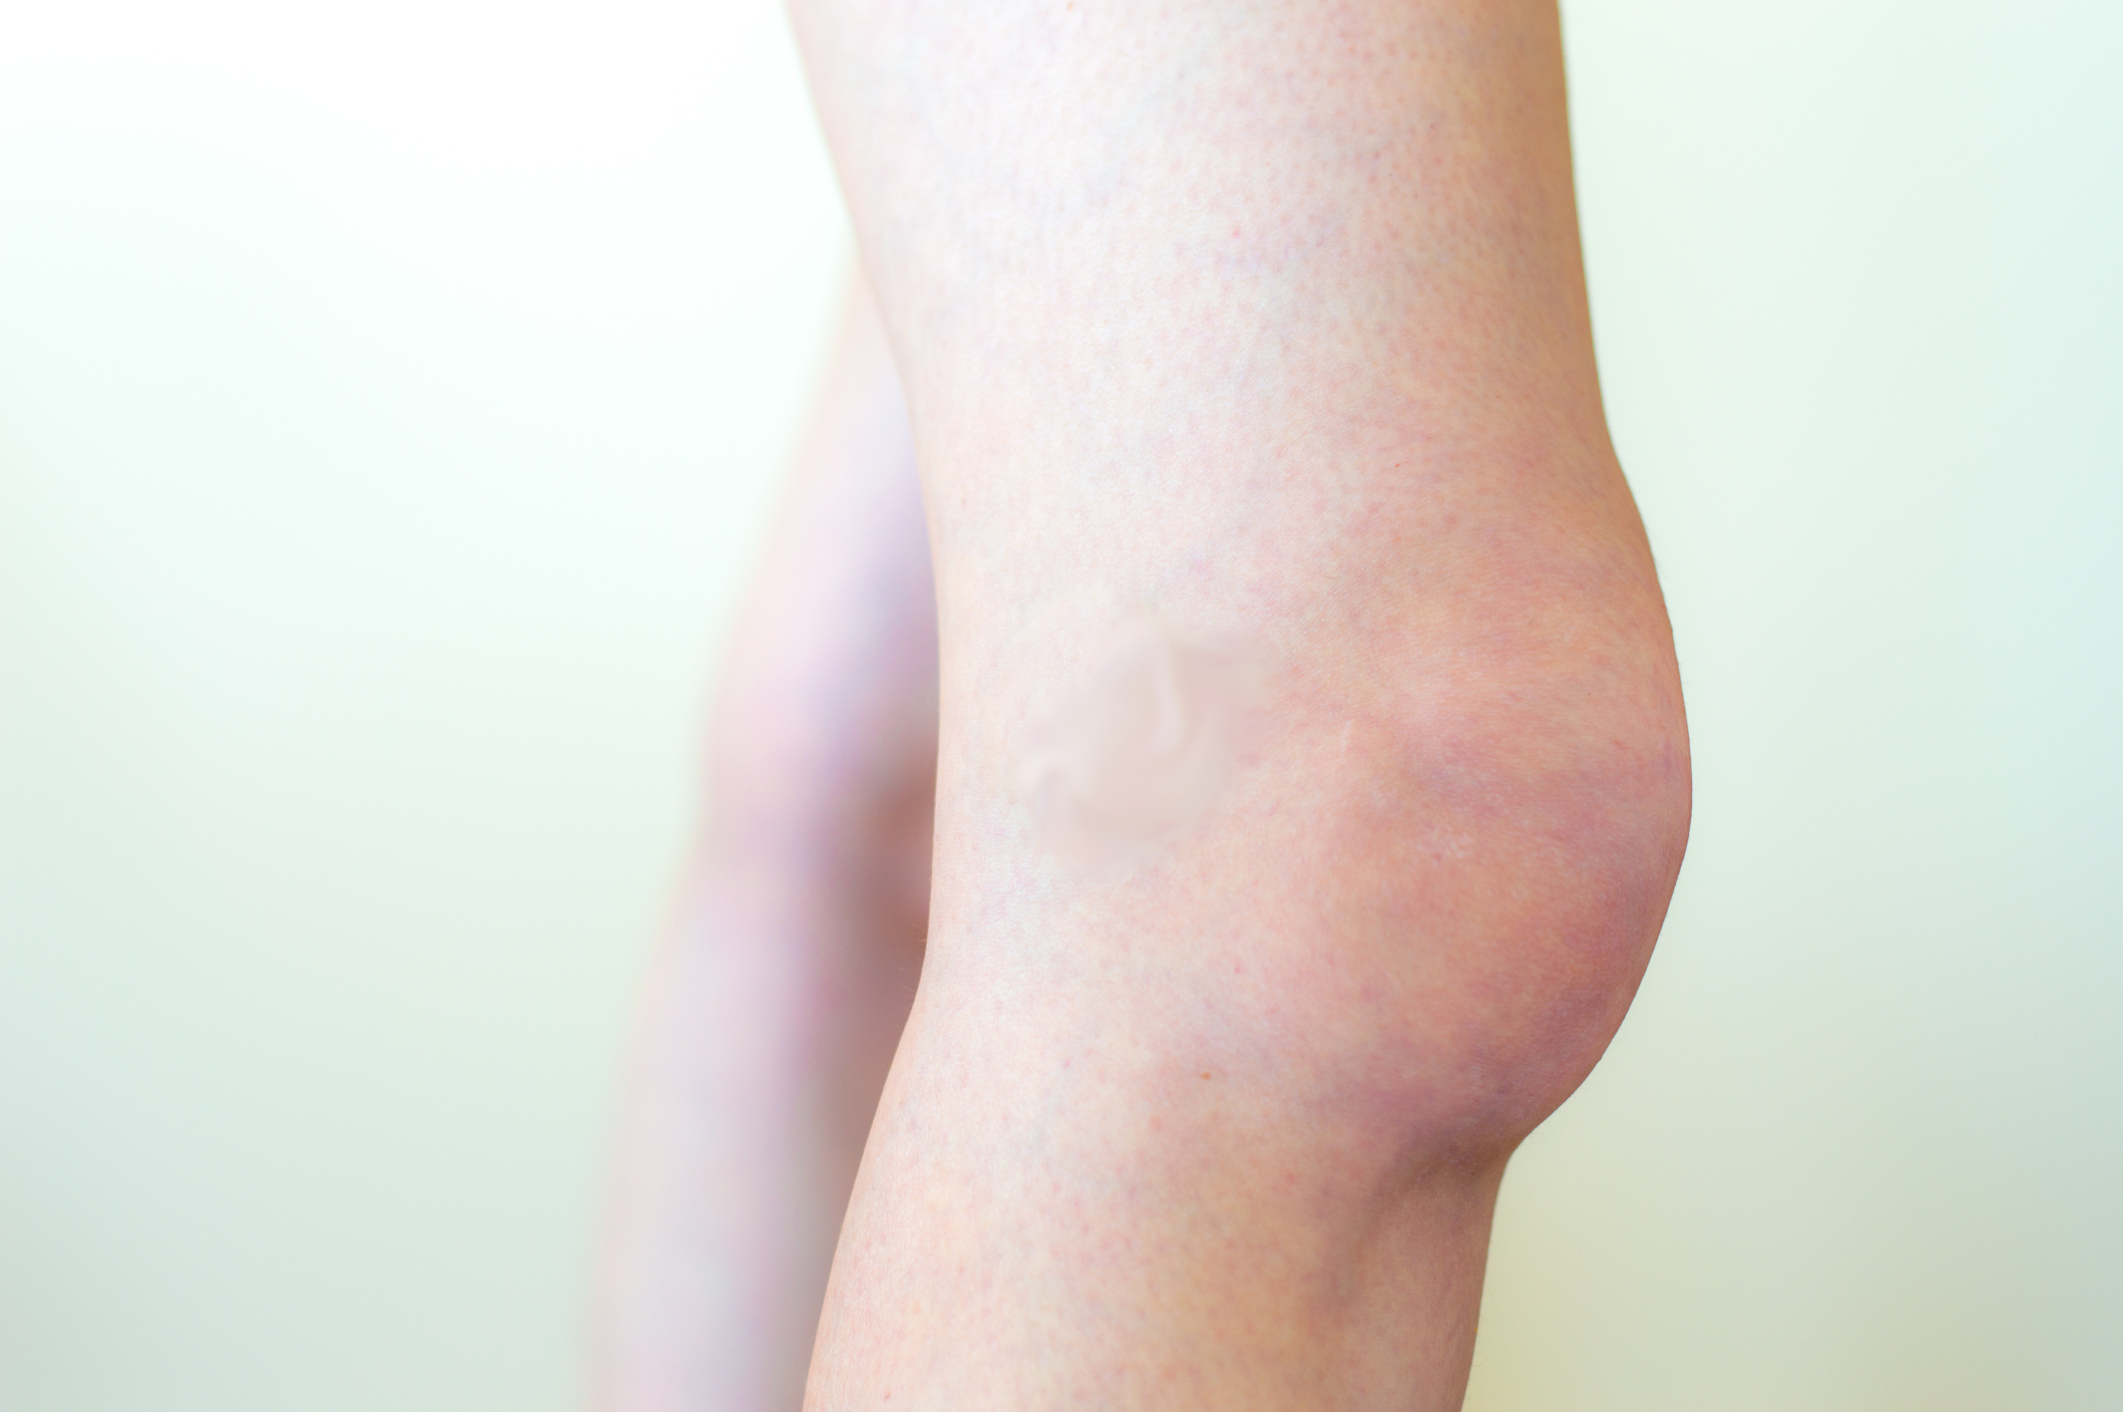 edema in knee joint nutri bangų raiščių ir sąnarių gelis